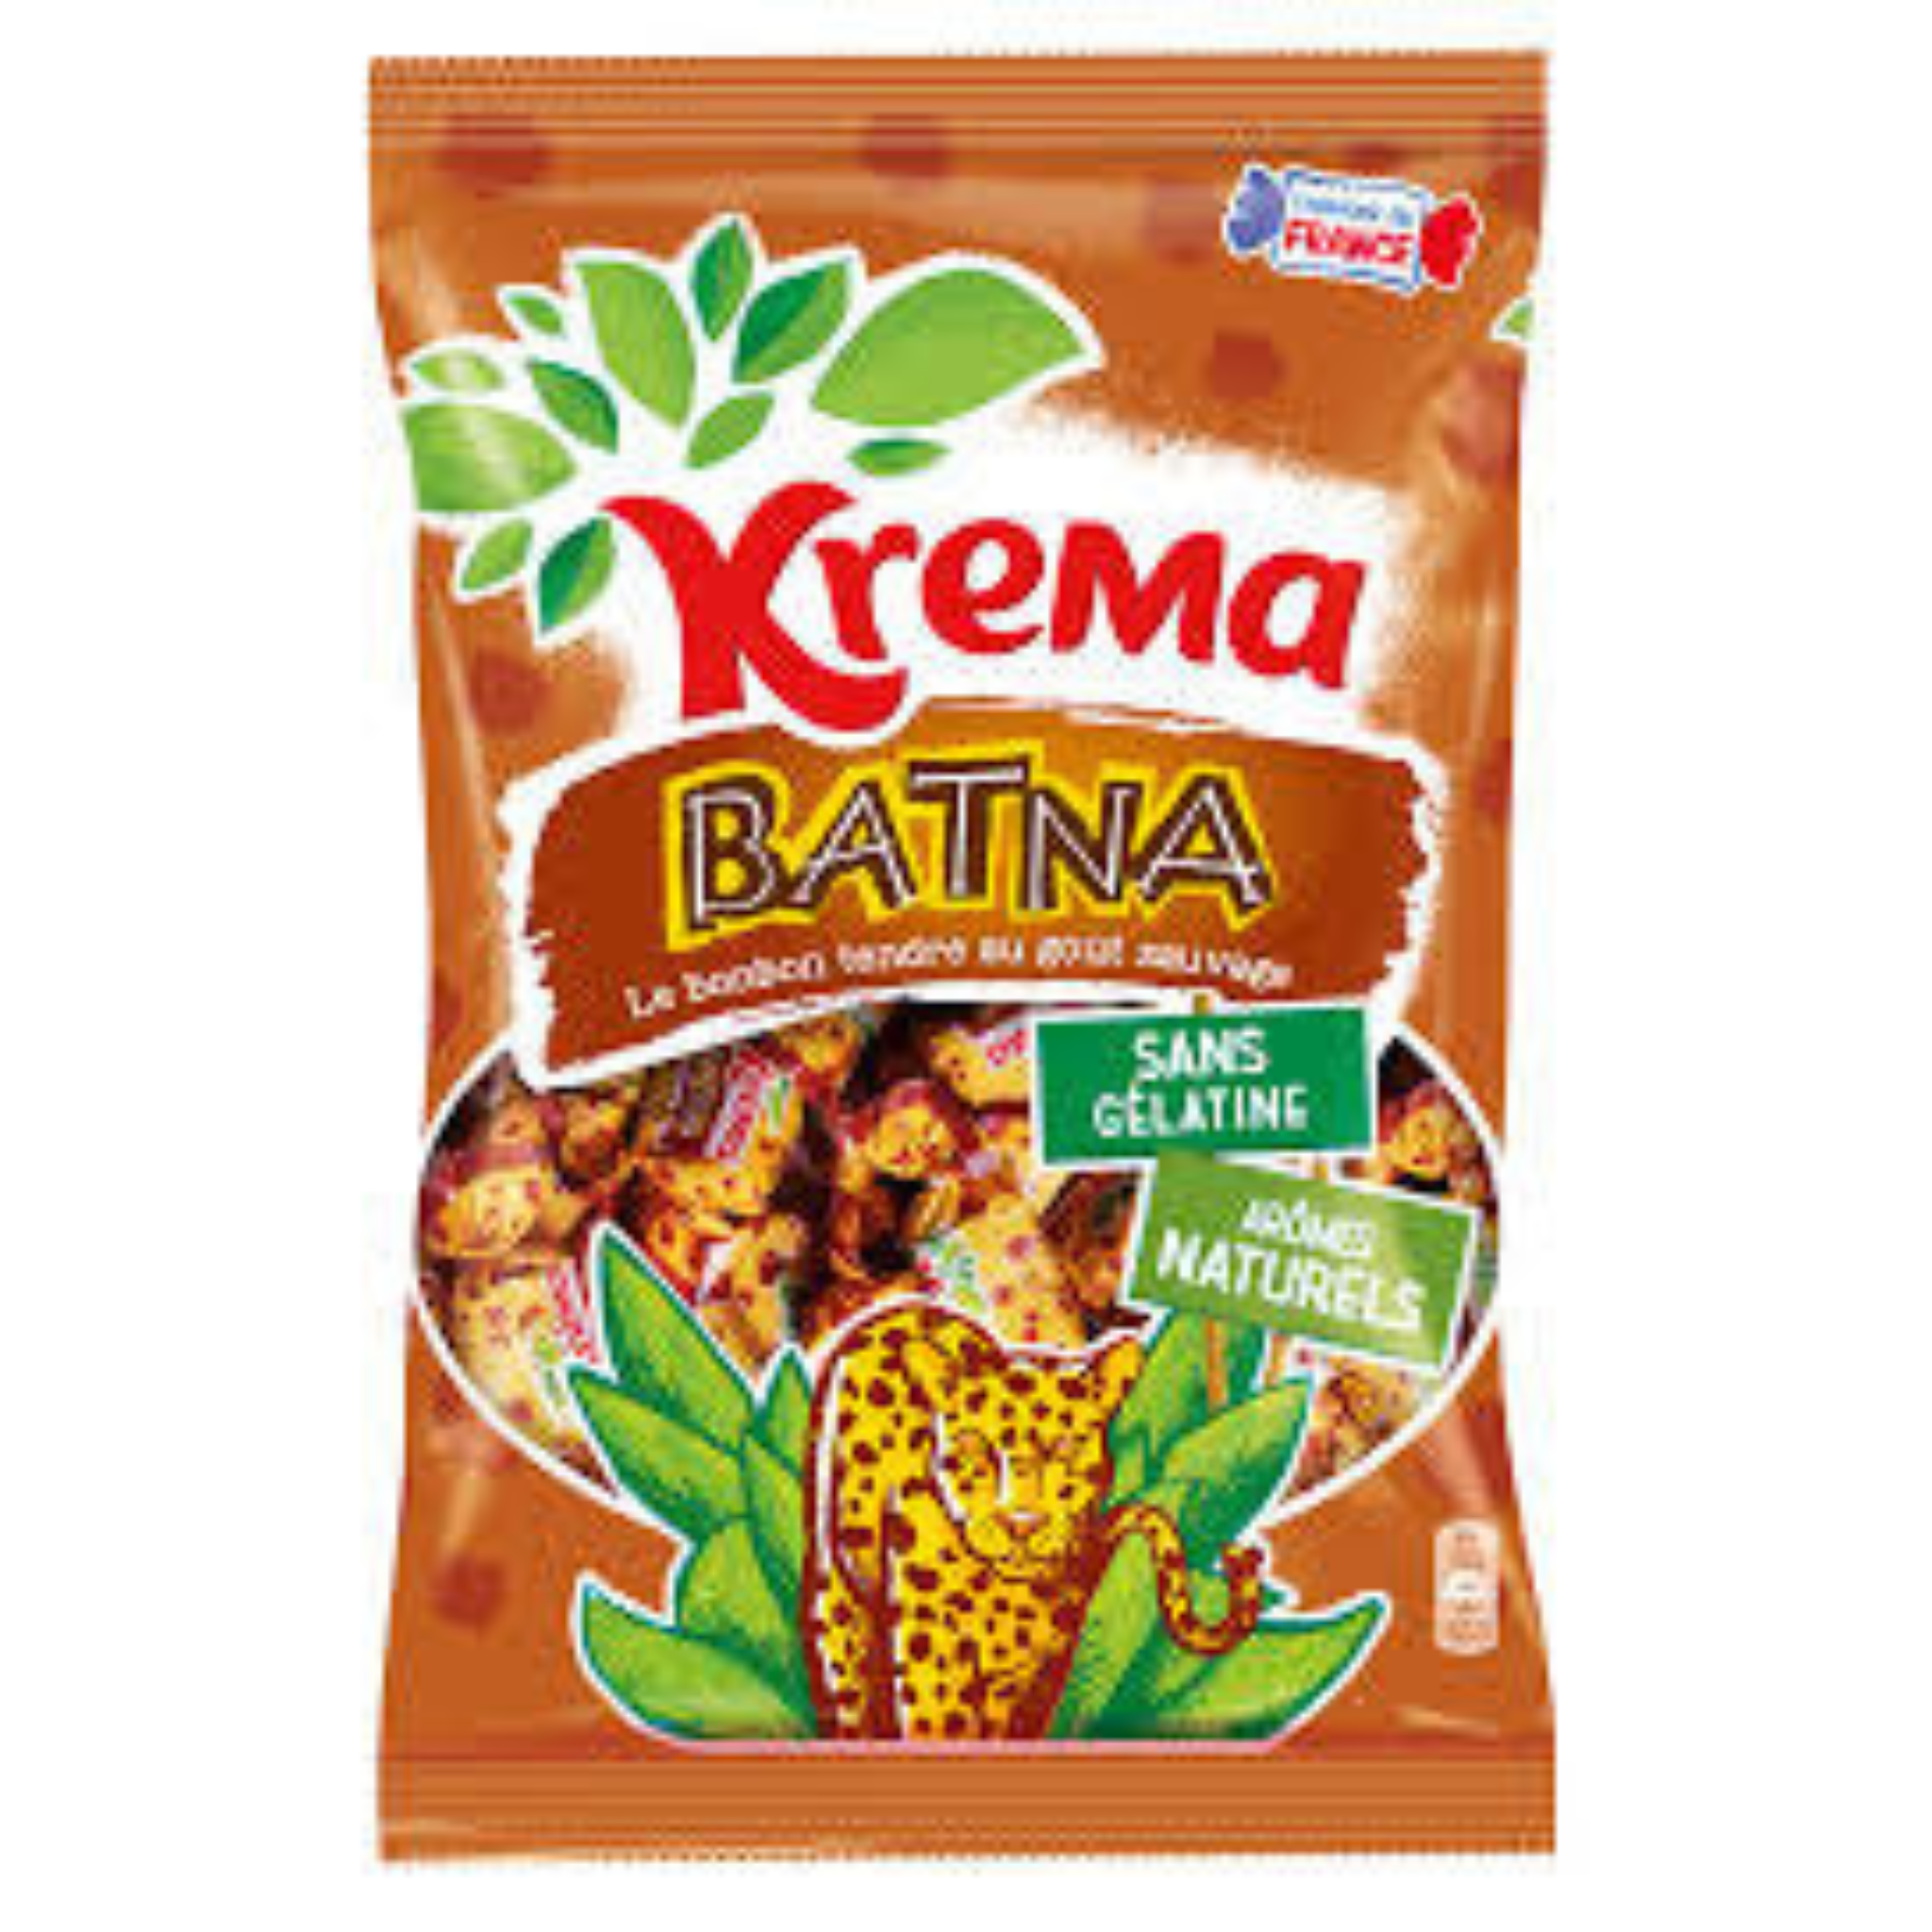 Découvrez le recette unique de Krema Batna, de délicieux bonbons tendre sans gélatine et 100% arômes et colorants naturels. Fabriqué en France